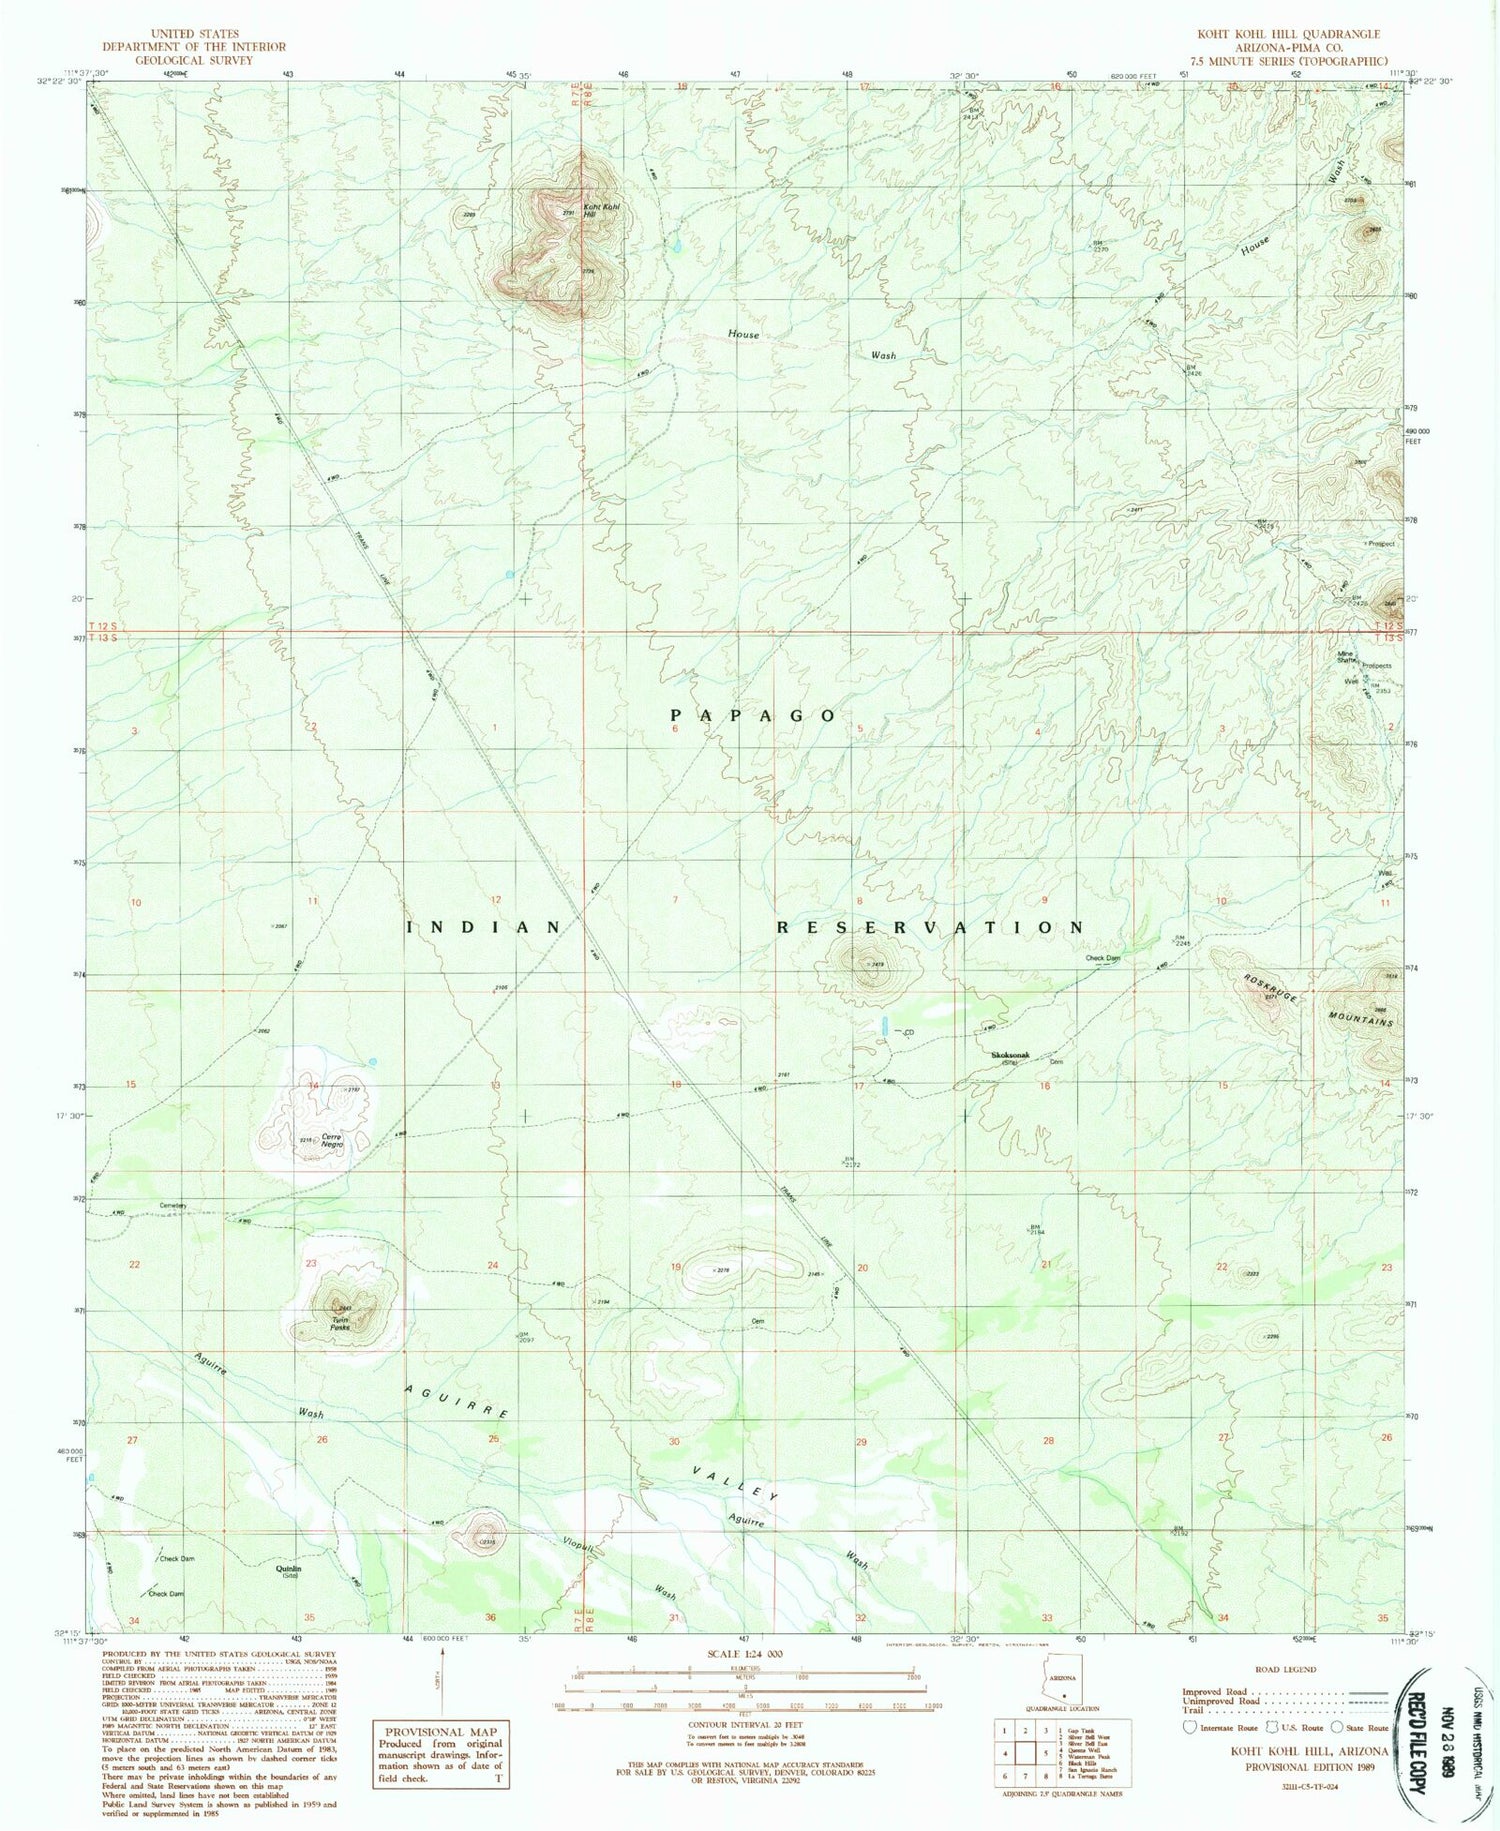 Classic USGS Koht Kohl Hill Arizona 7.5'x7.5' Topo Map Image